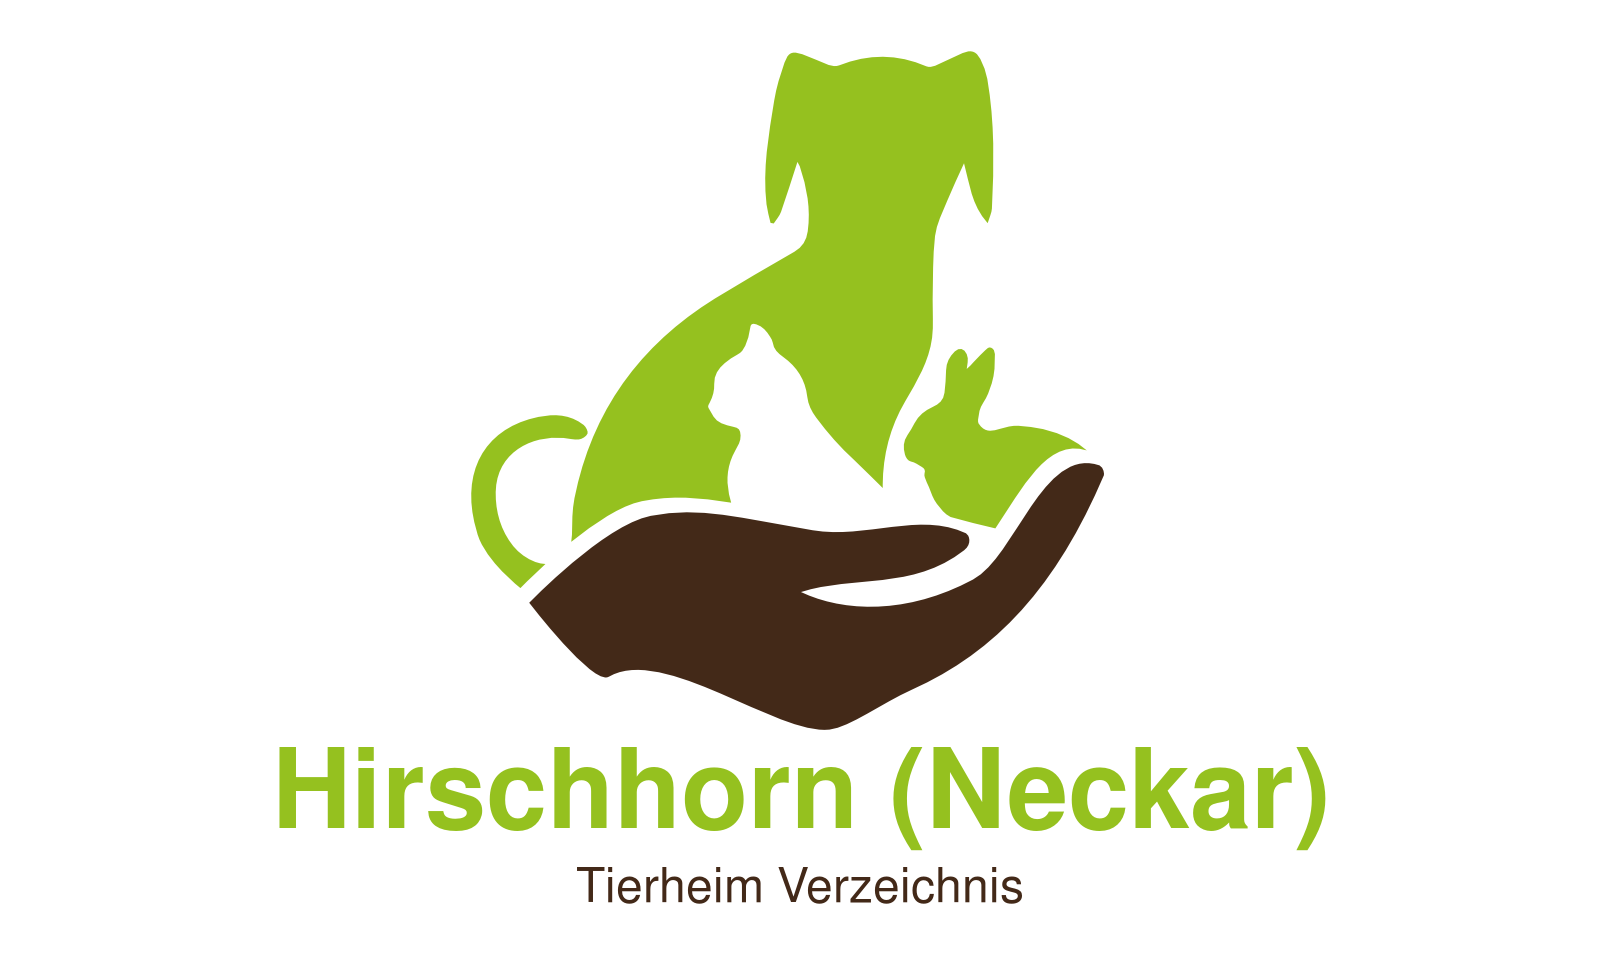 Tierheim Hirschhorn (Neckar)